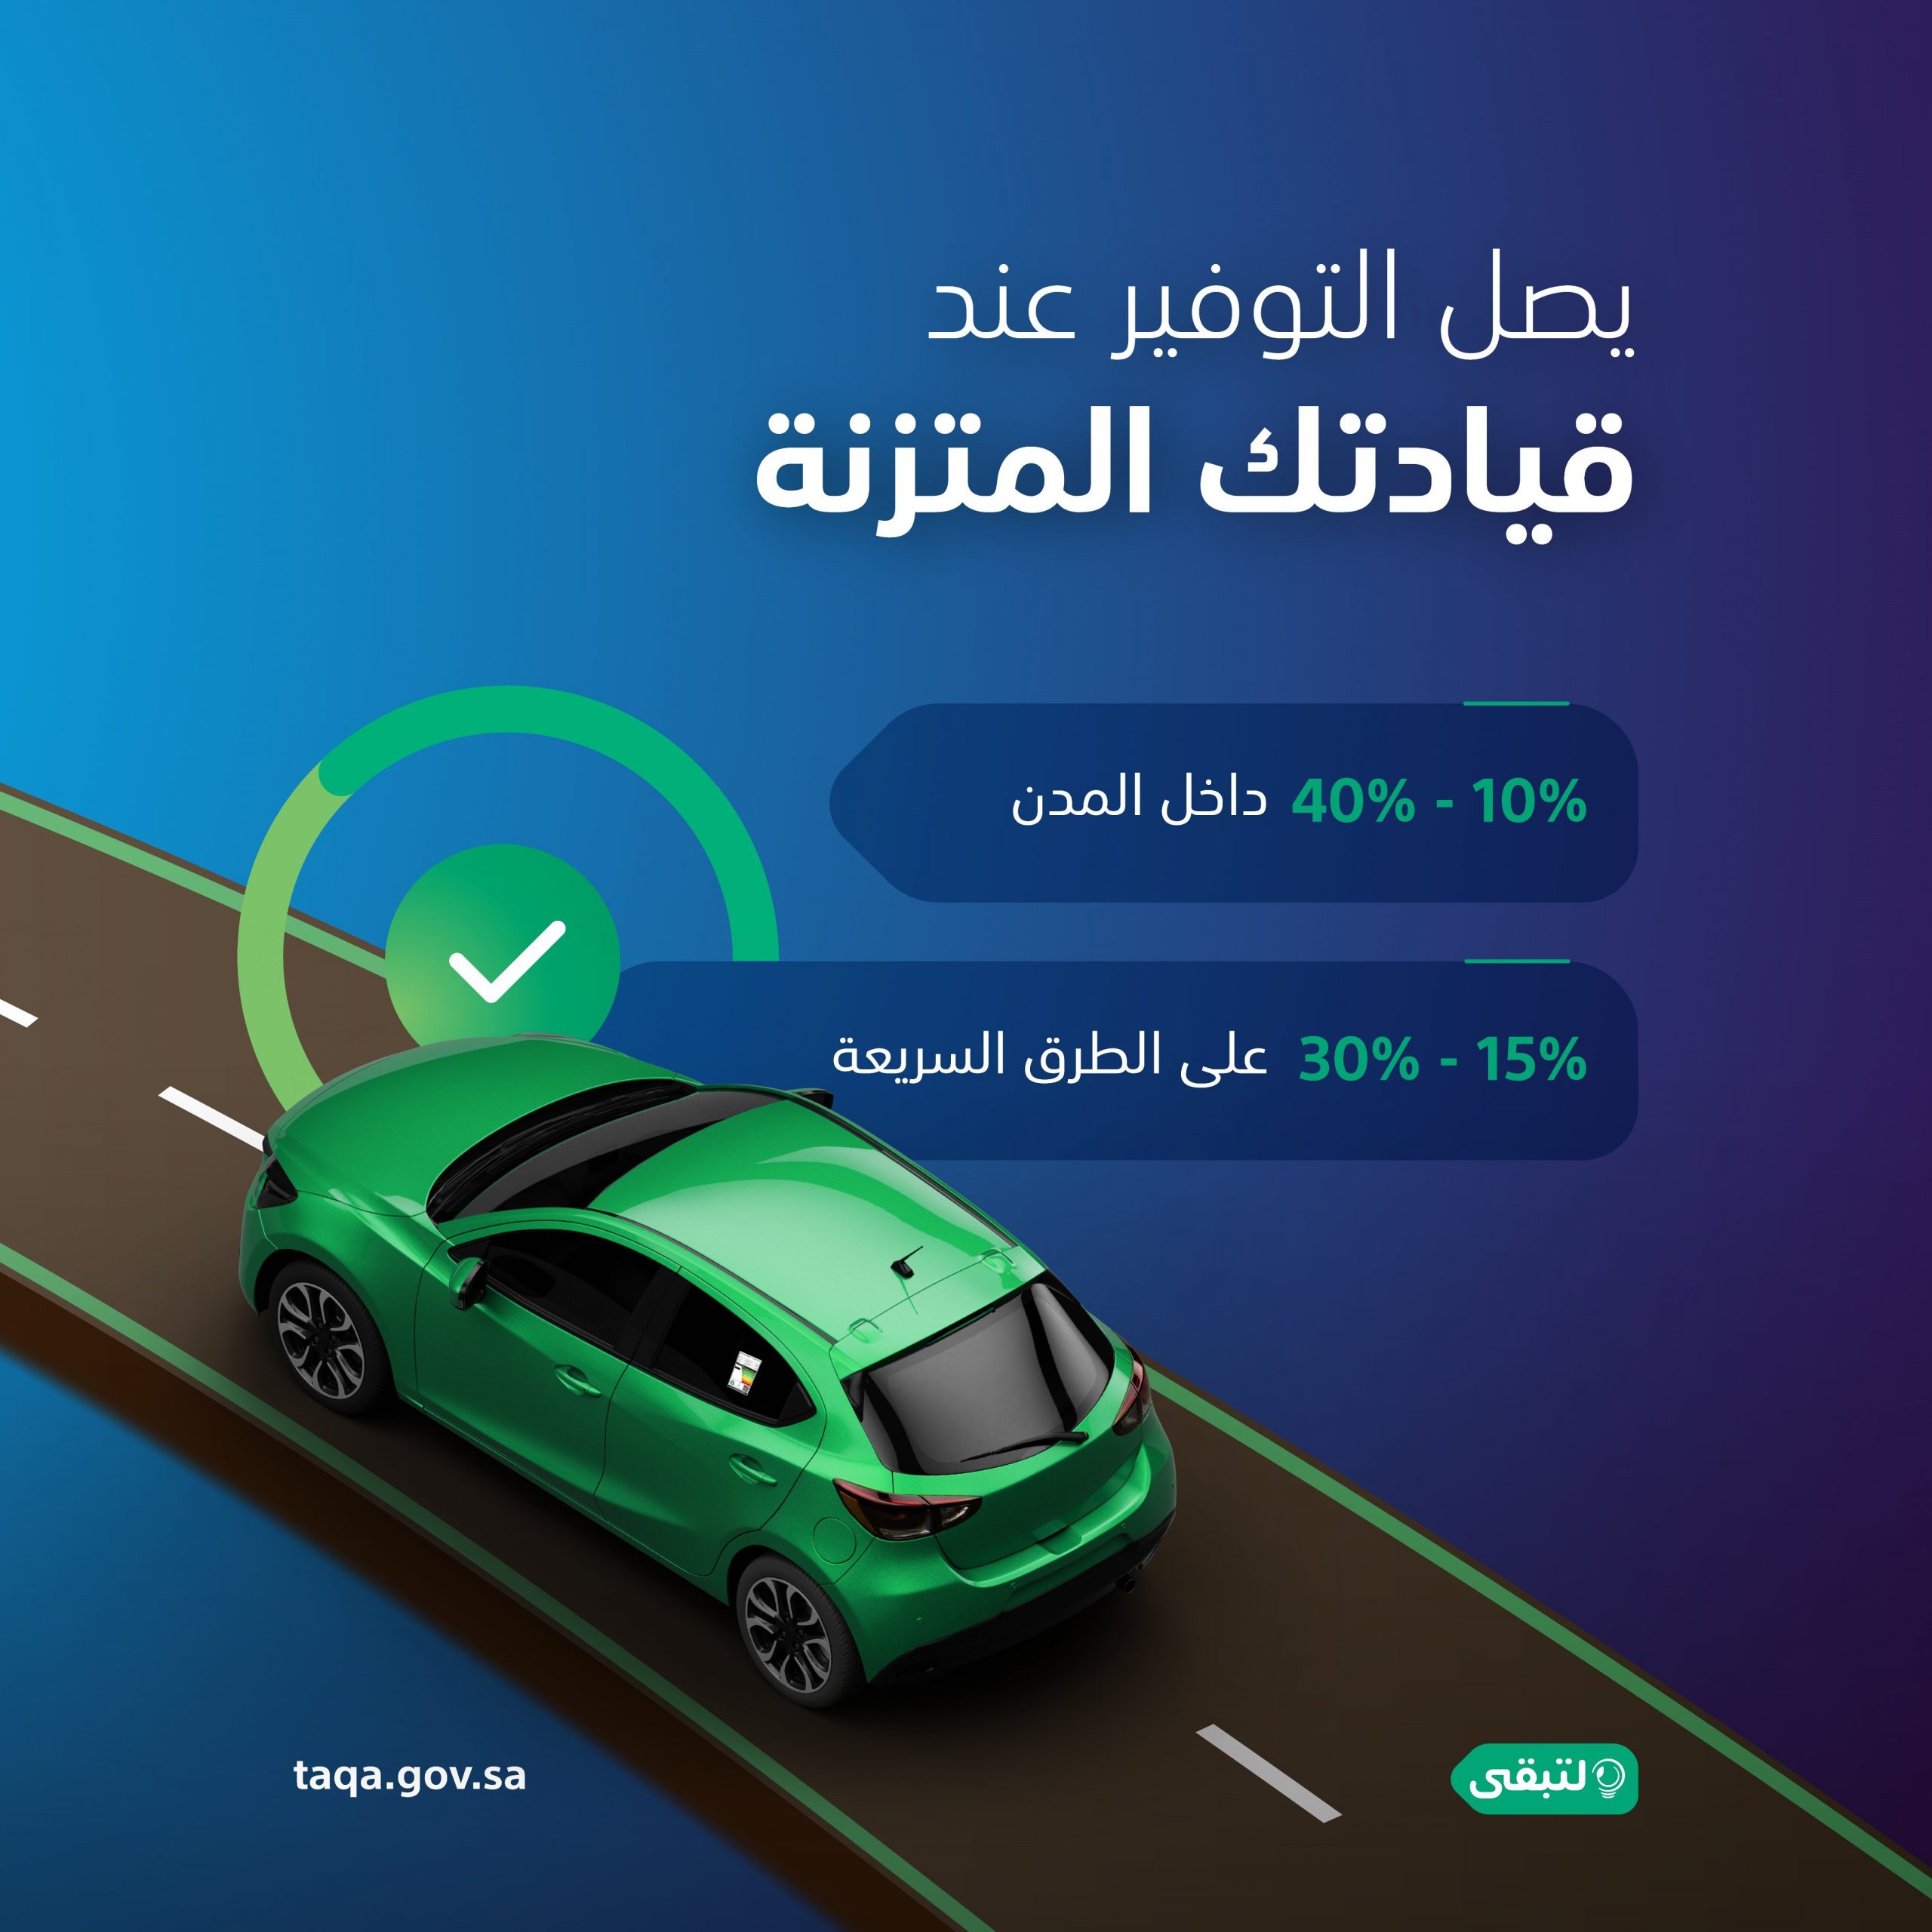 "لتبقى": القيادة المتزنة توفر 40% من استهلاك وقود مركبتك 3